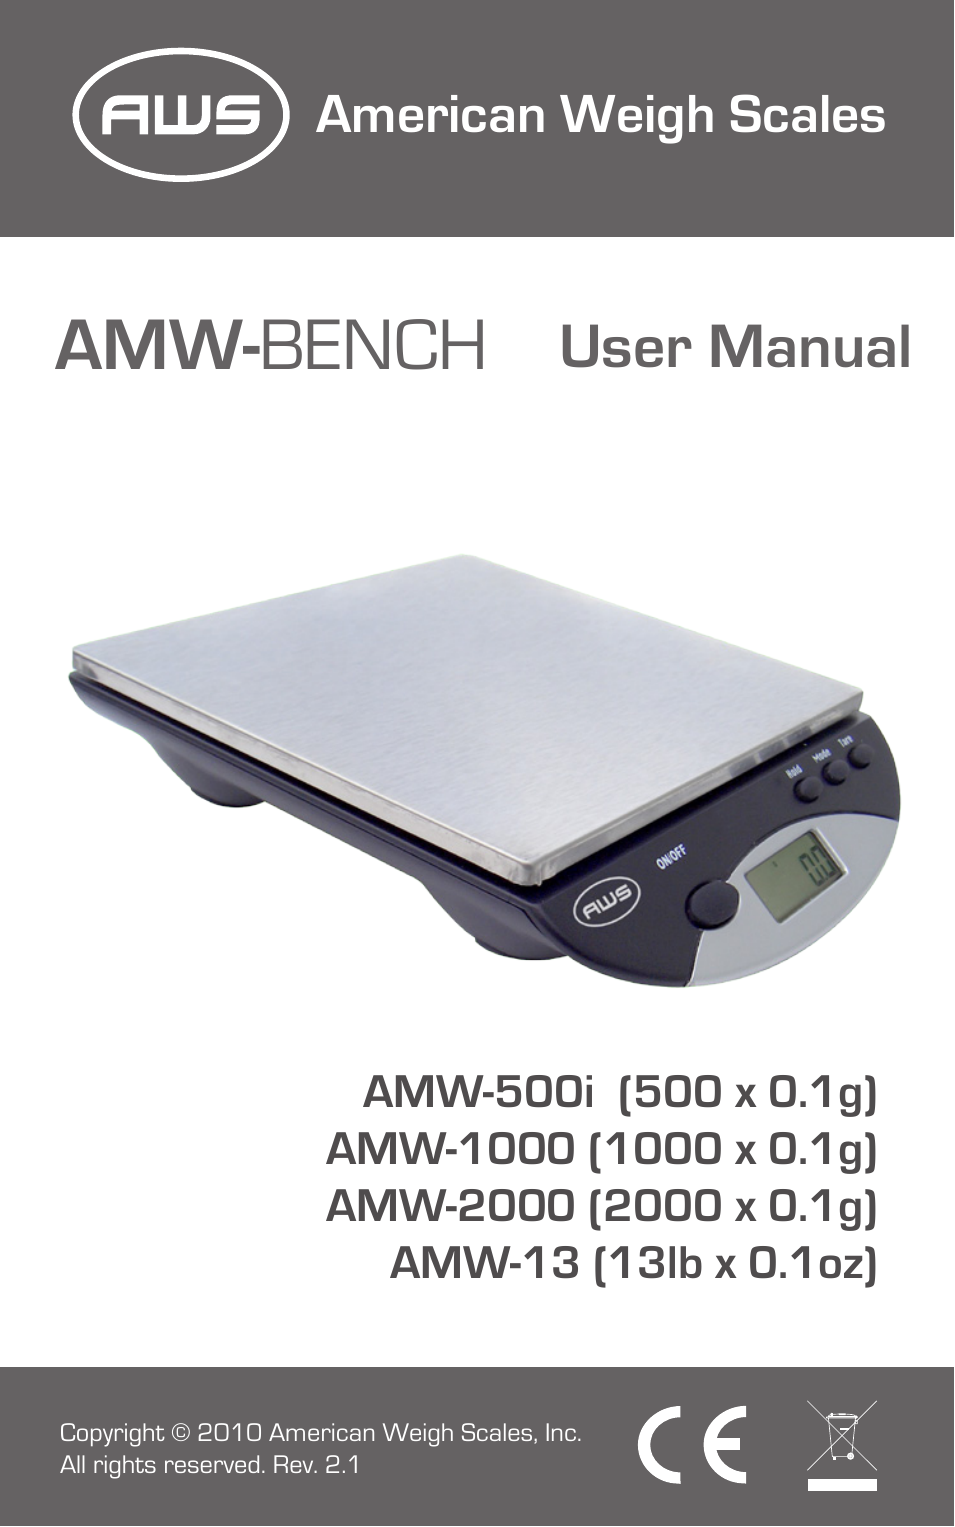 AMW-1000